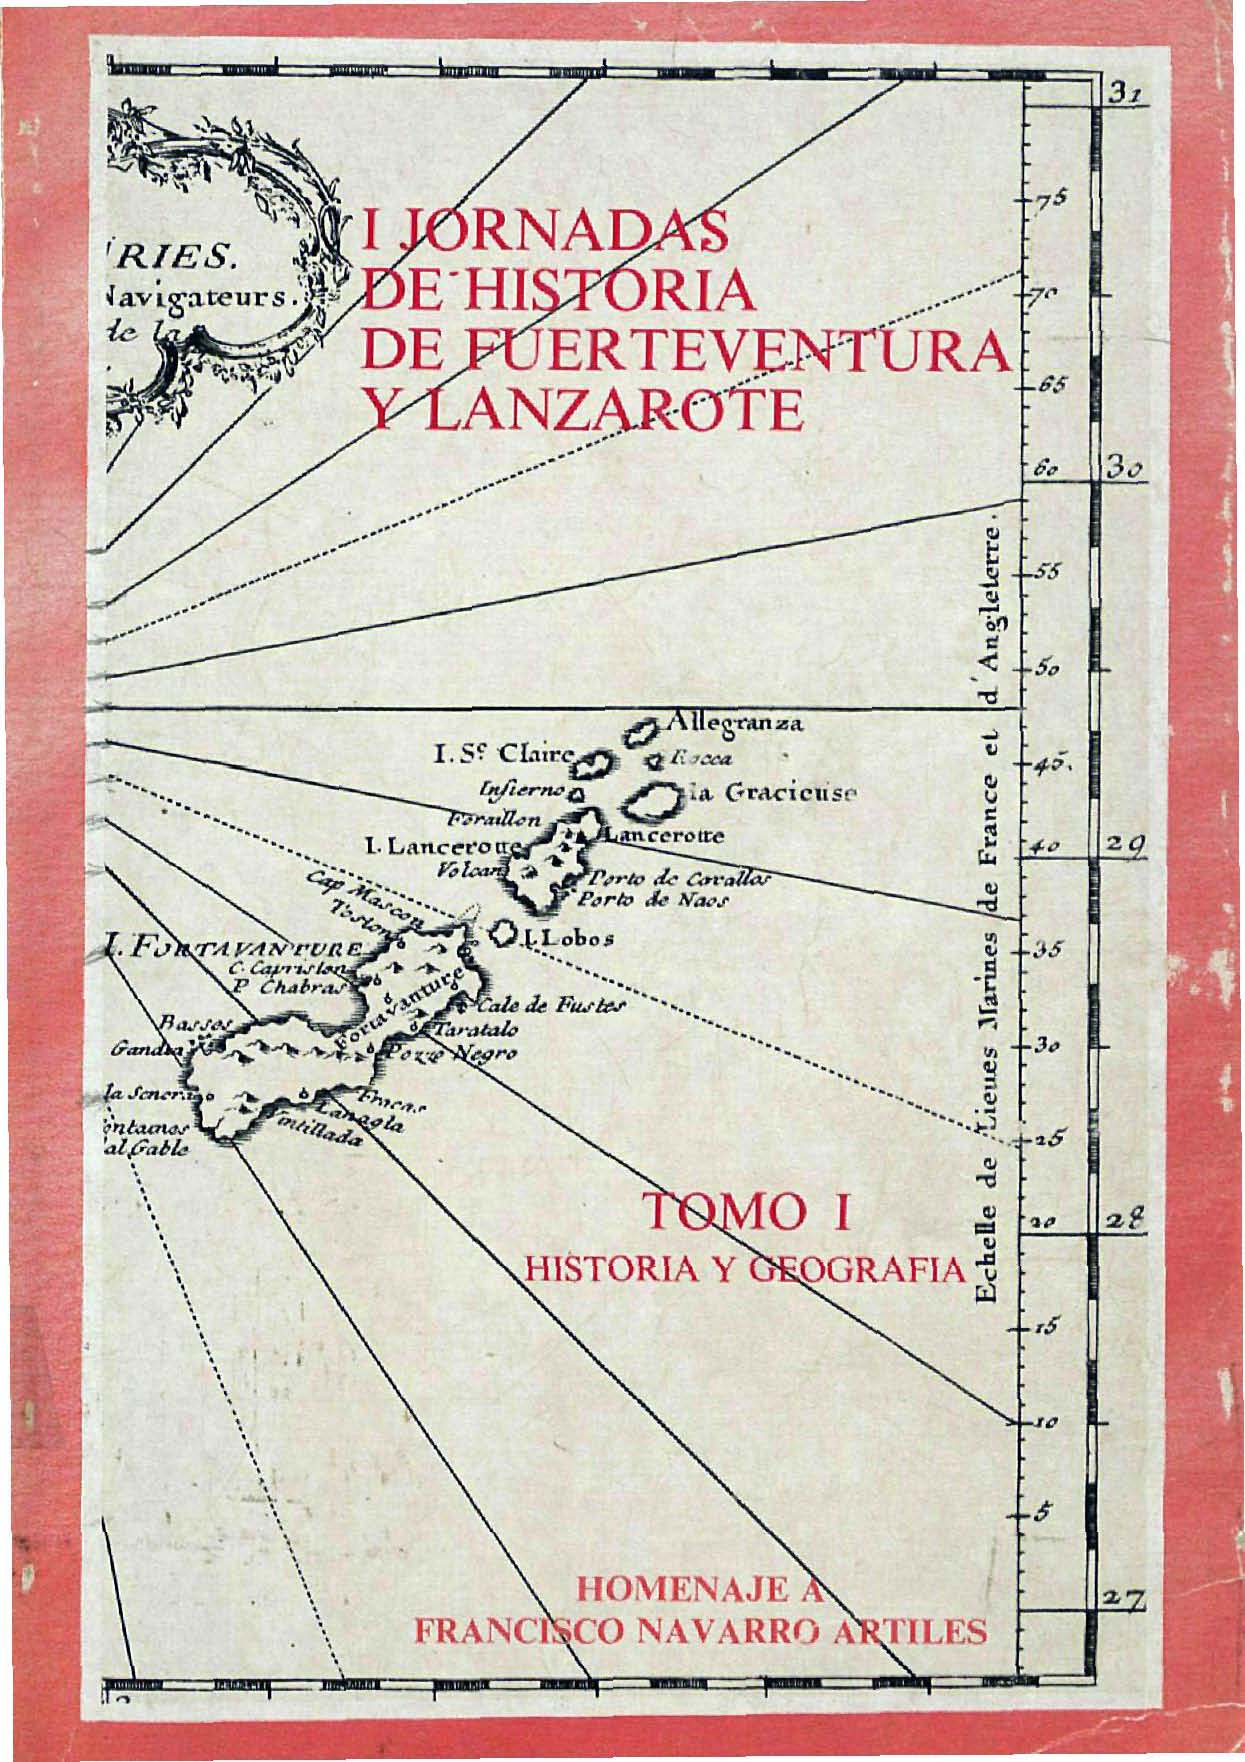 Fuerteventura y Lanzarote: Sondeo en una crisis (1875-1884)